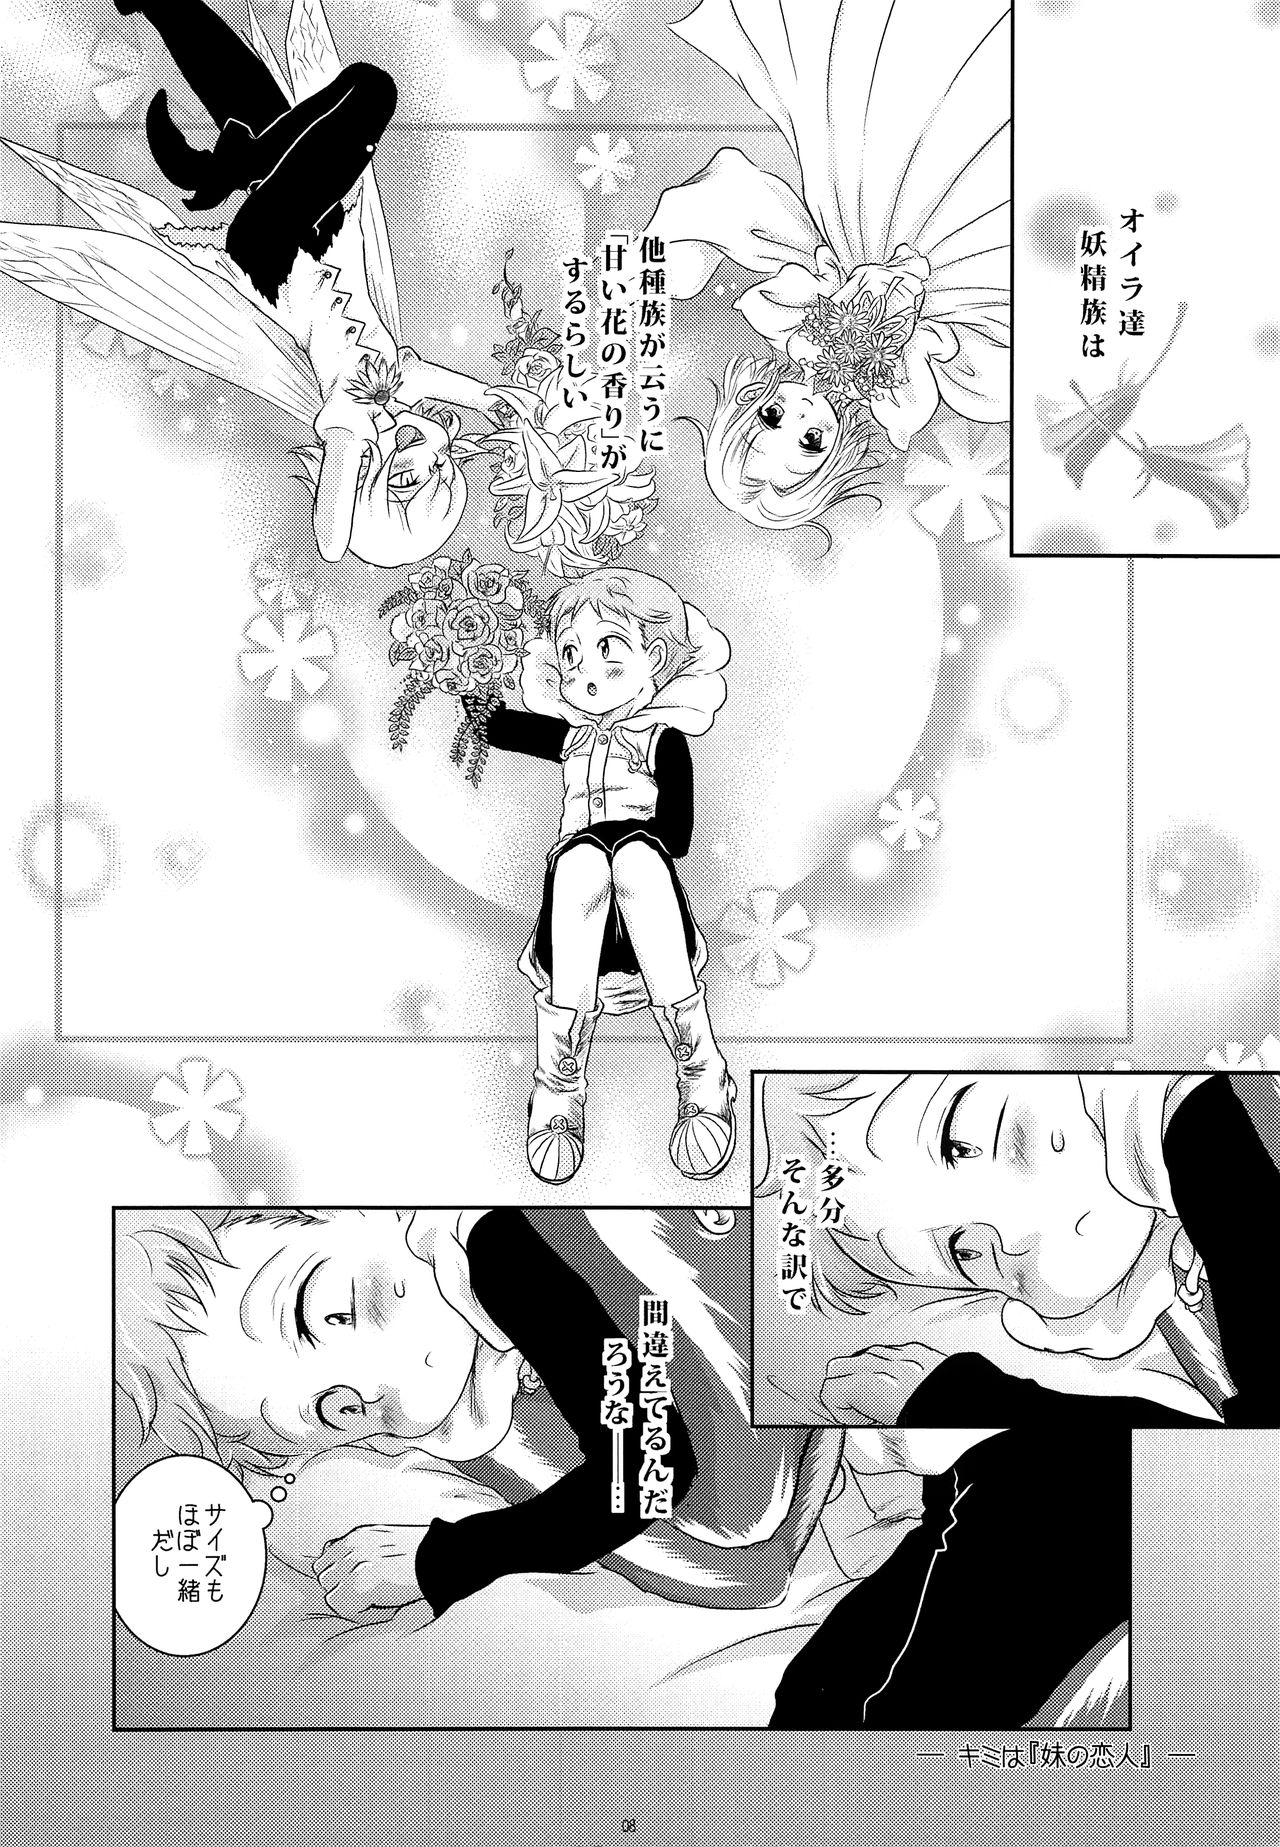 Tetas Grandes Kimi wa "Imouto no Koibito" - Nanatsu no taizai Anime - Page 7